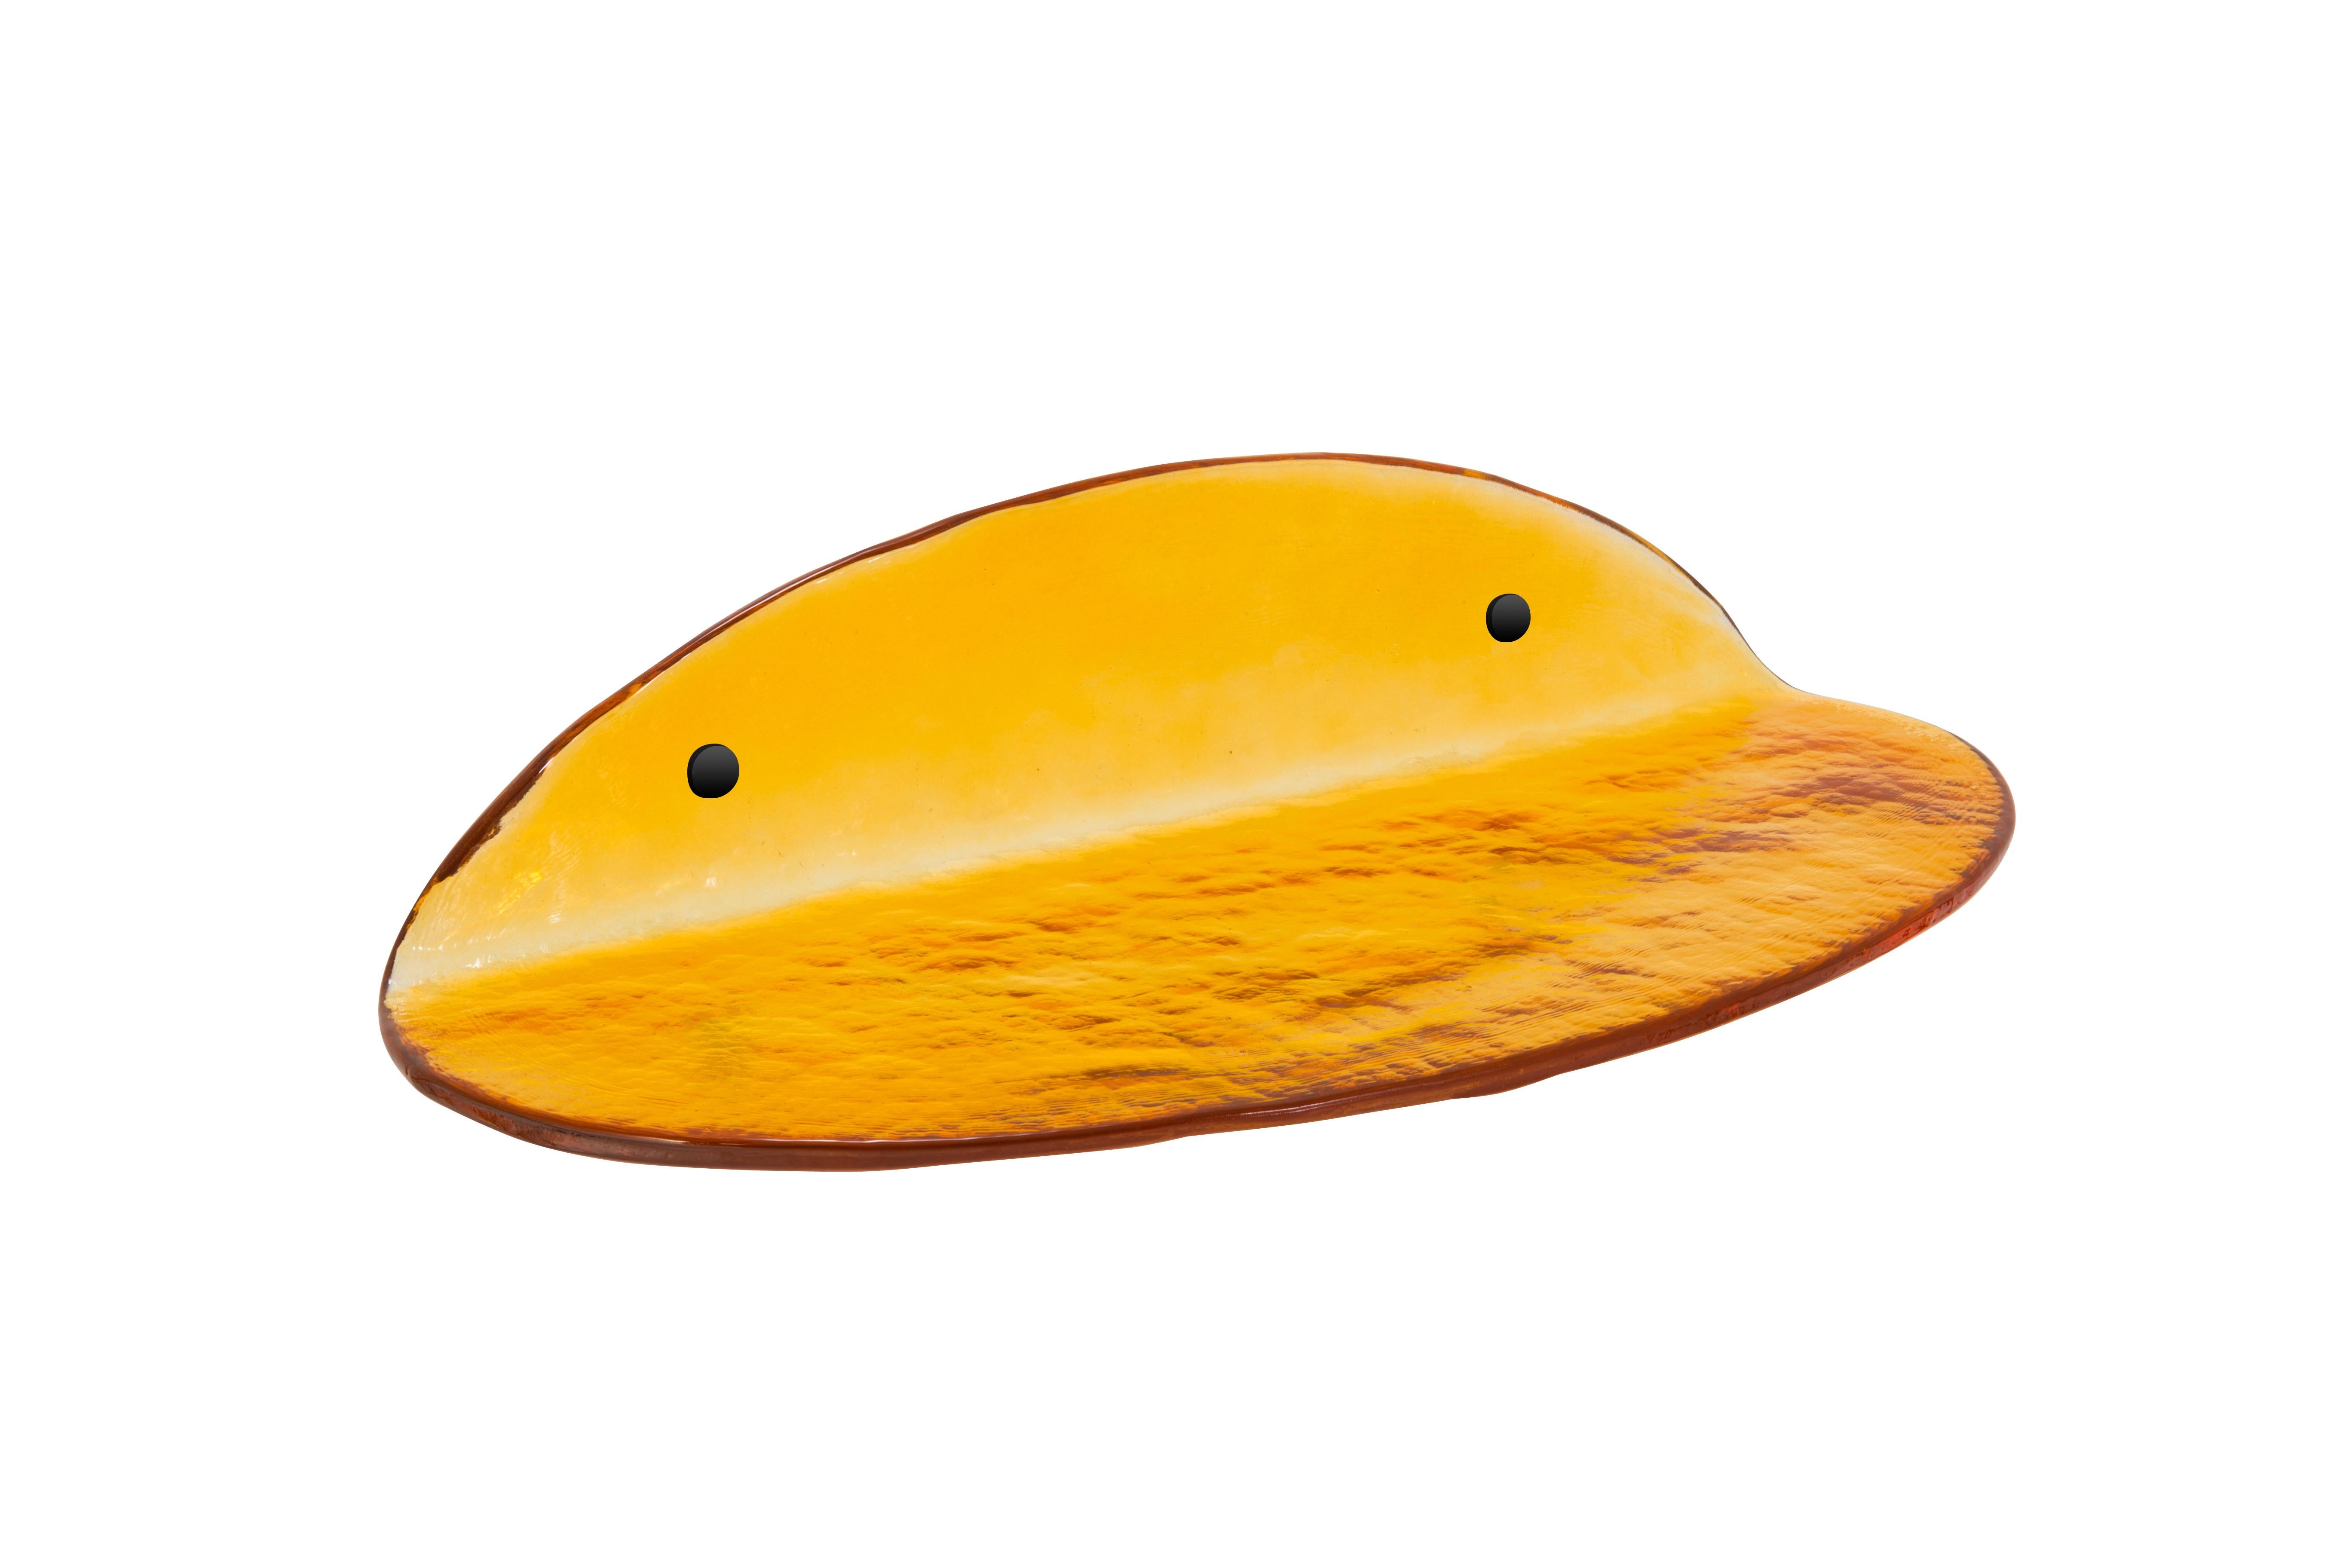 Etagère moyenne ambrée Blash de Pulpo
Dimensions : D50 x L20 x H11 cm
Matériaux : verre moulé.

Disponible également en différentes couleurs. 

Comme une touche de couleur et de transparence sur votre mur, l'ensemble d'étagères murales en verre